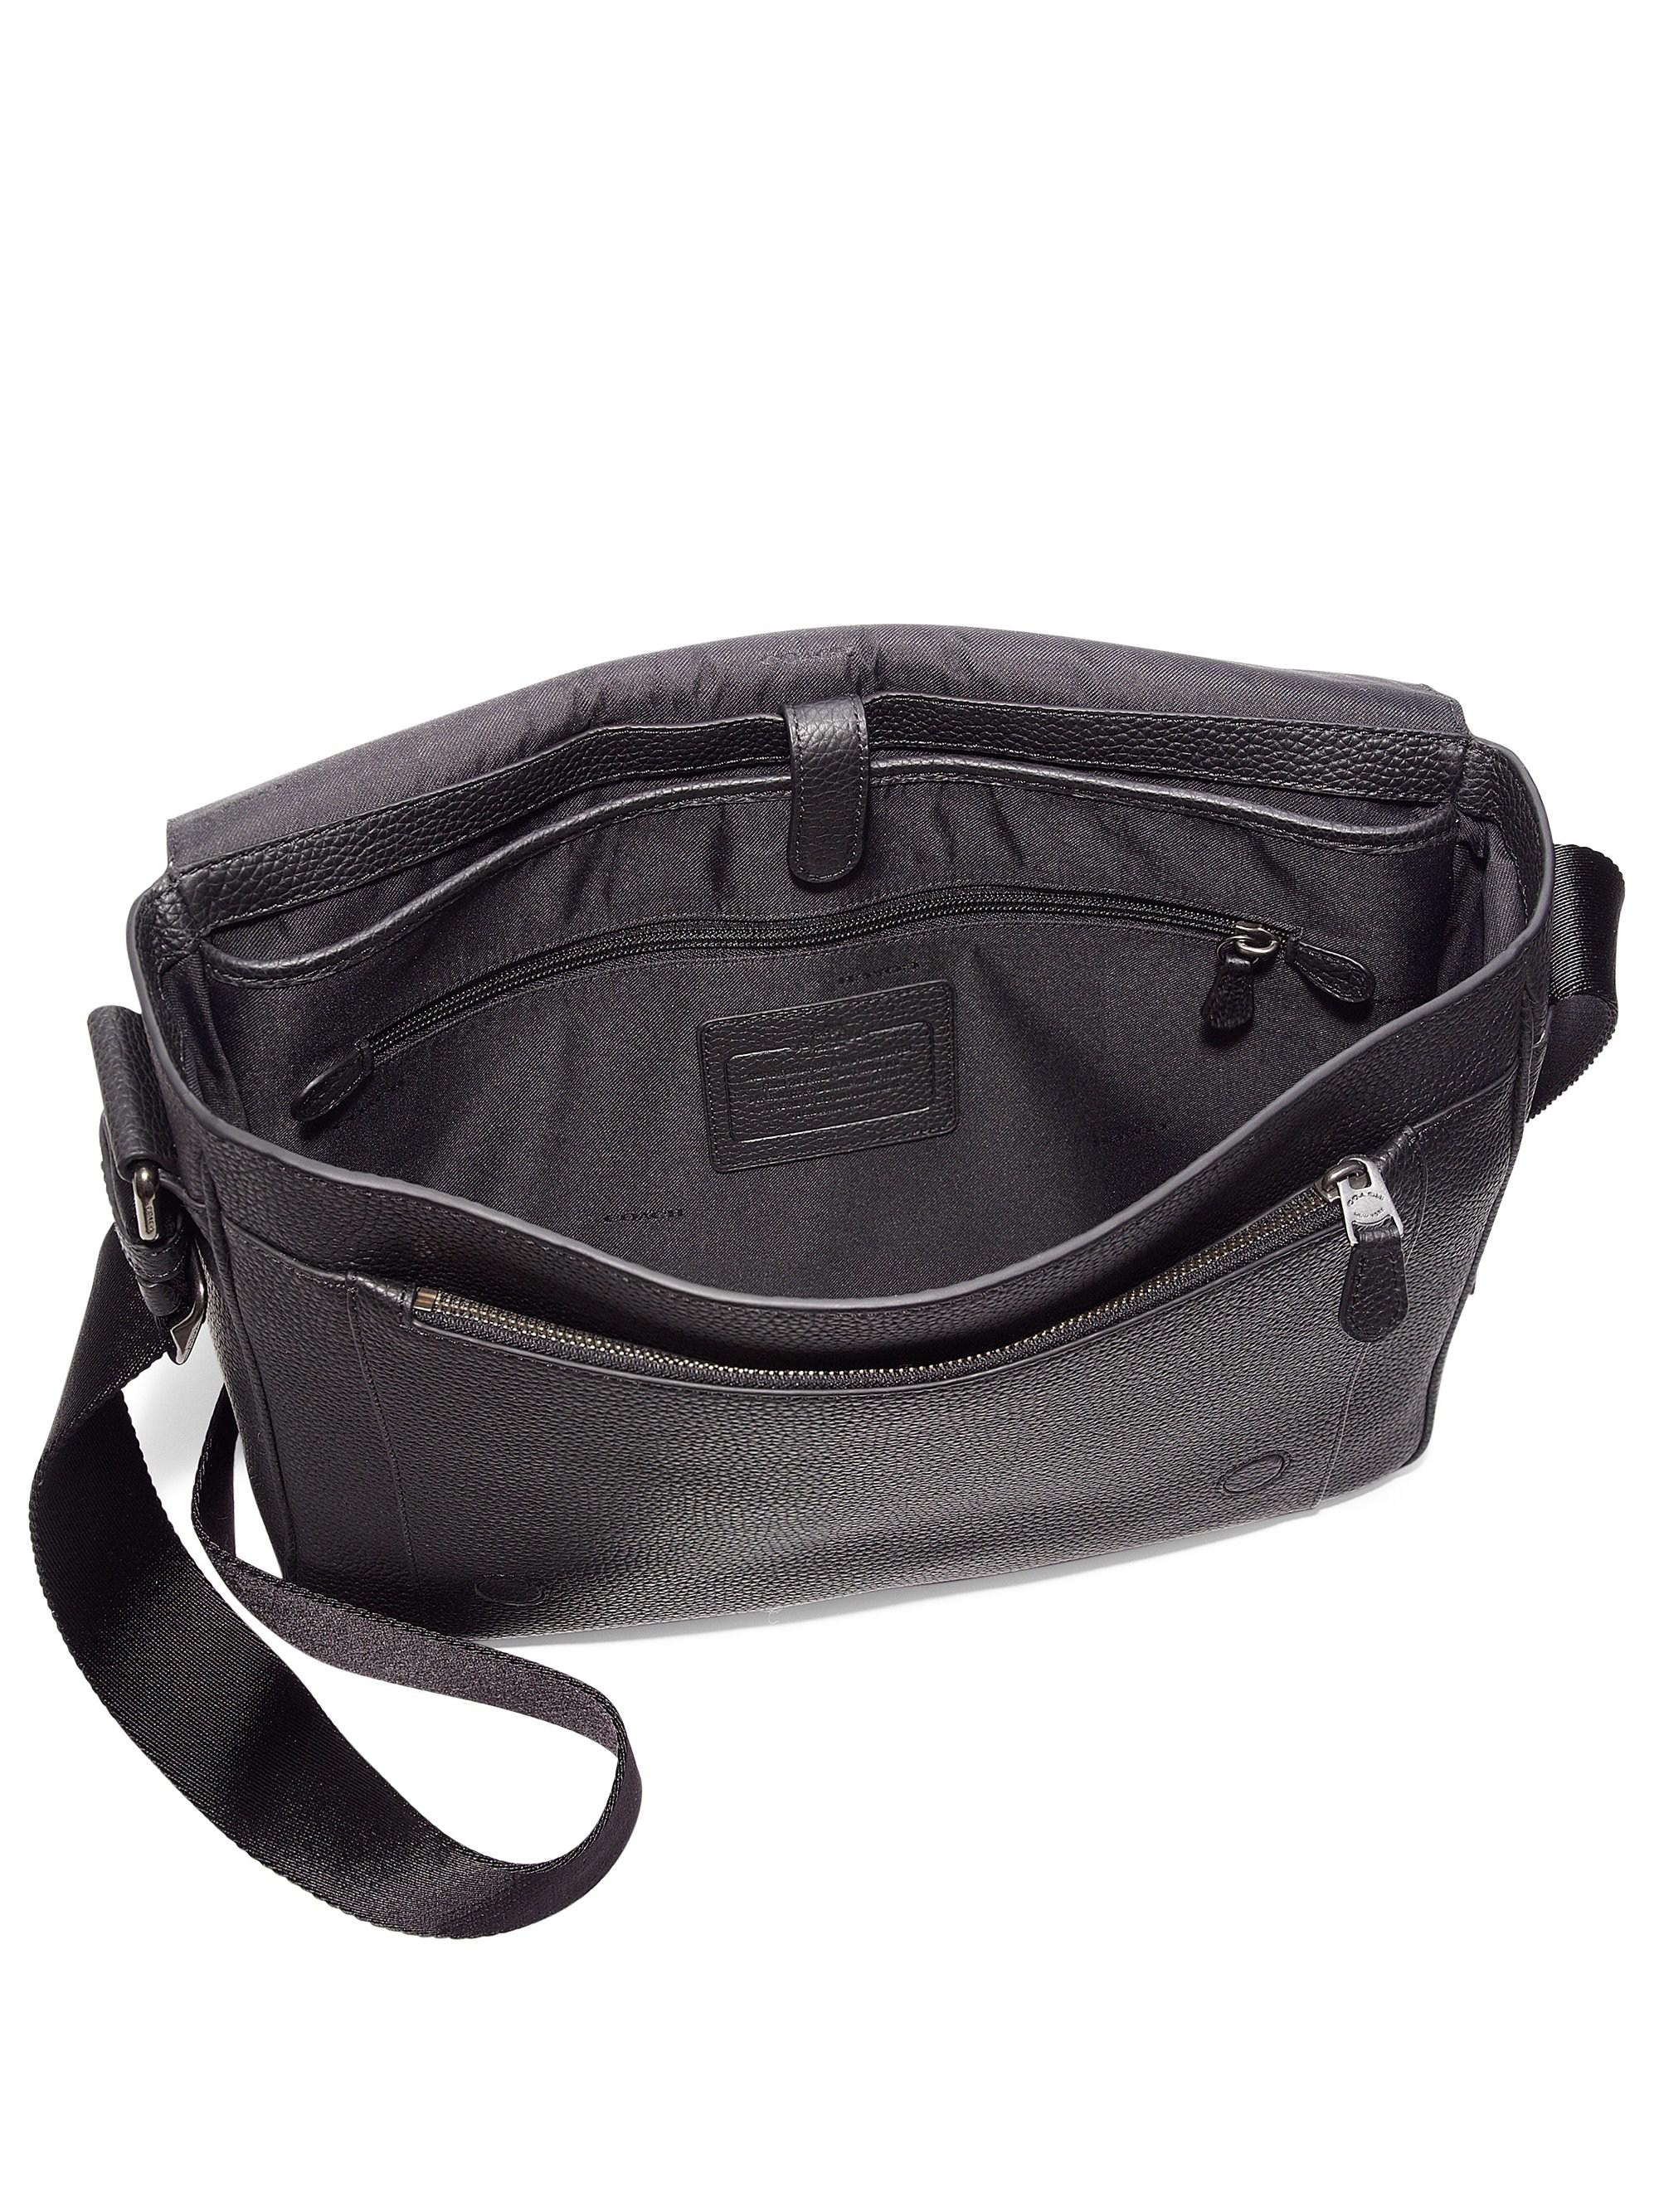 COACH Metropolitan Pebbled Leather Messenger Bag in Black for Men - Lyst